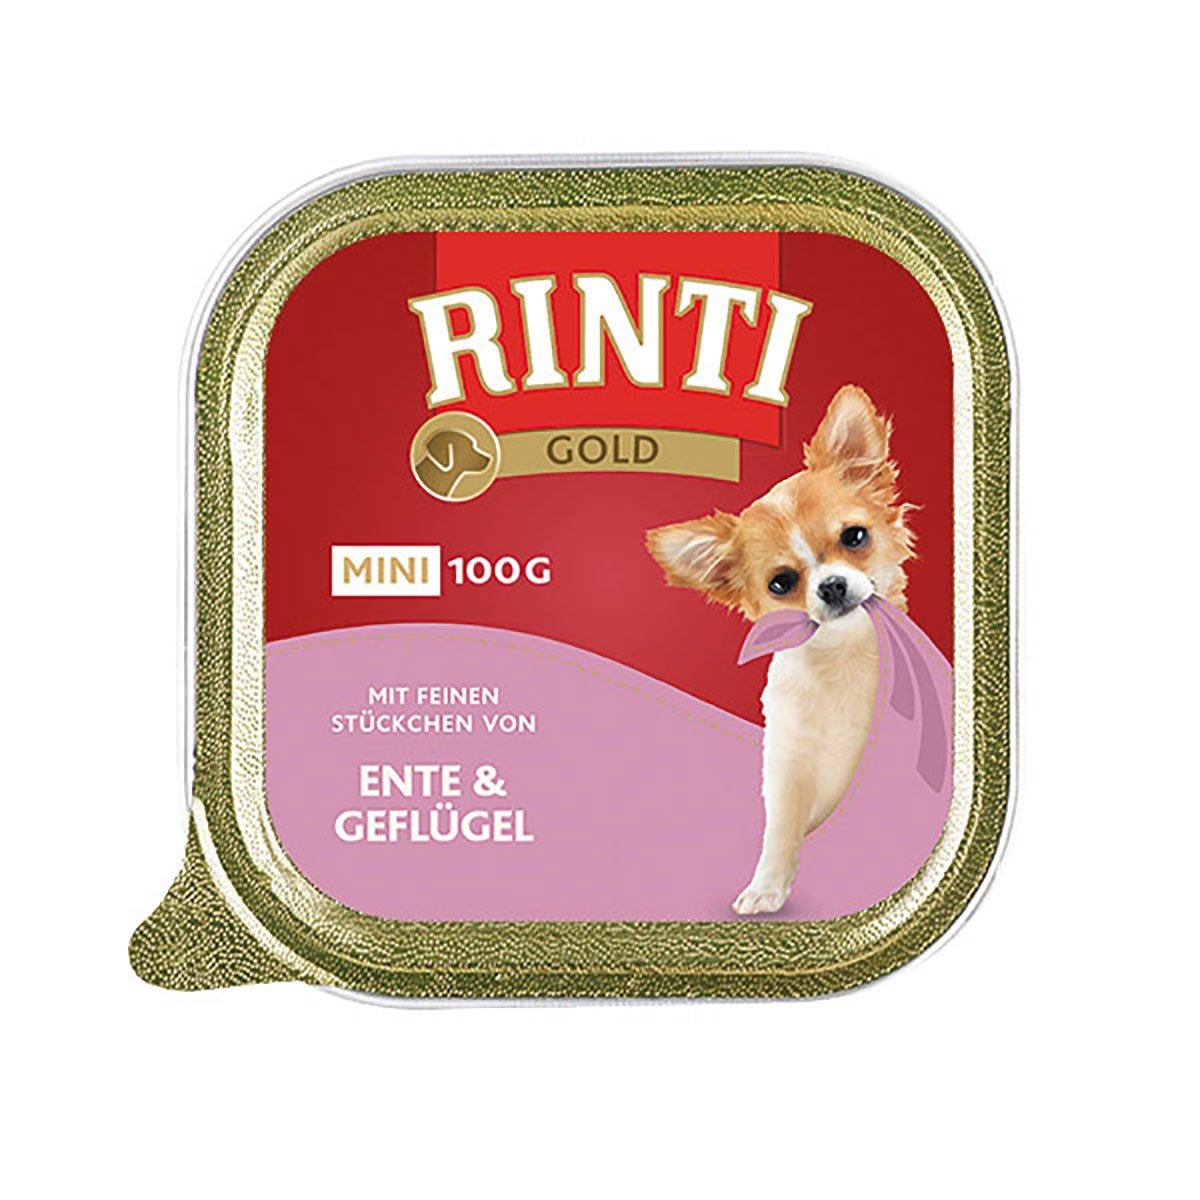 Rinti Gold Mini feine Stückchen von Ente & Geflügel 16x100g